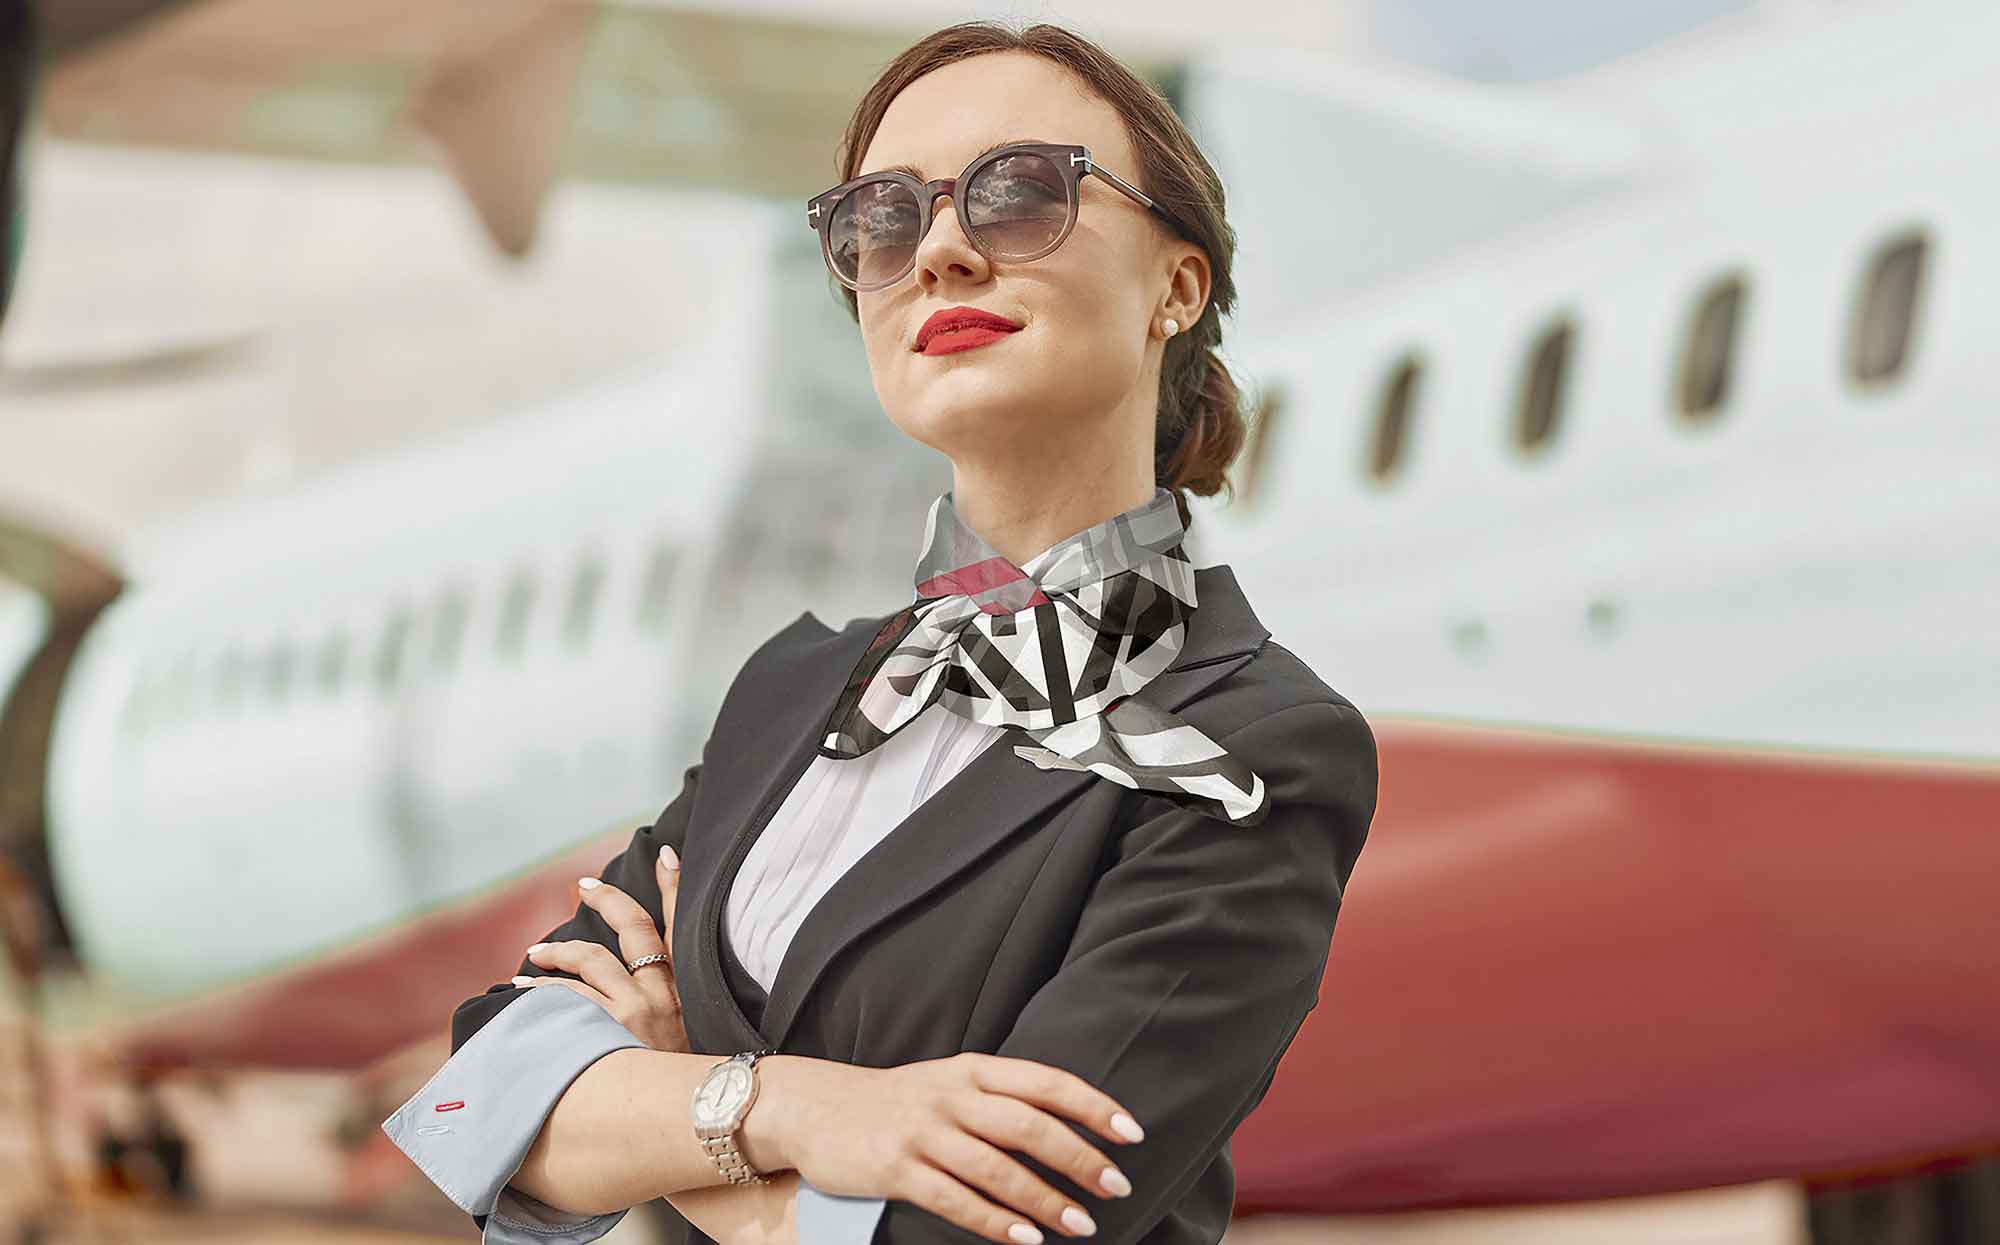 Stewardessa z firmowym chusteczka na szyi